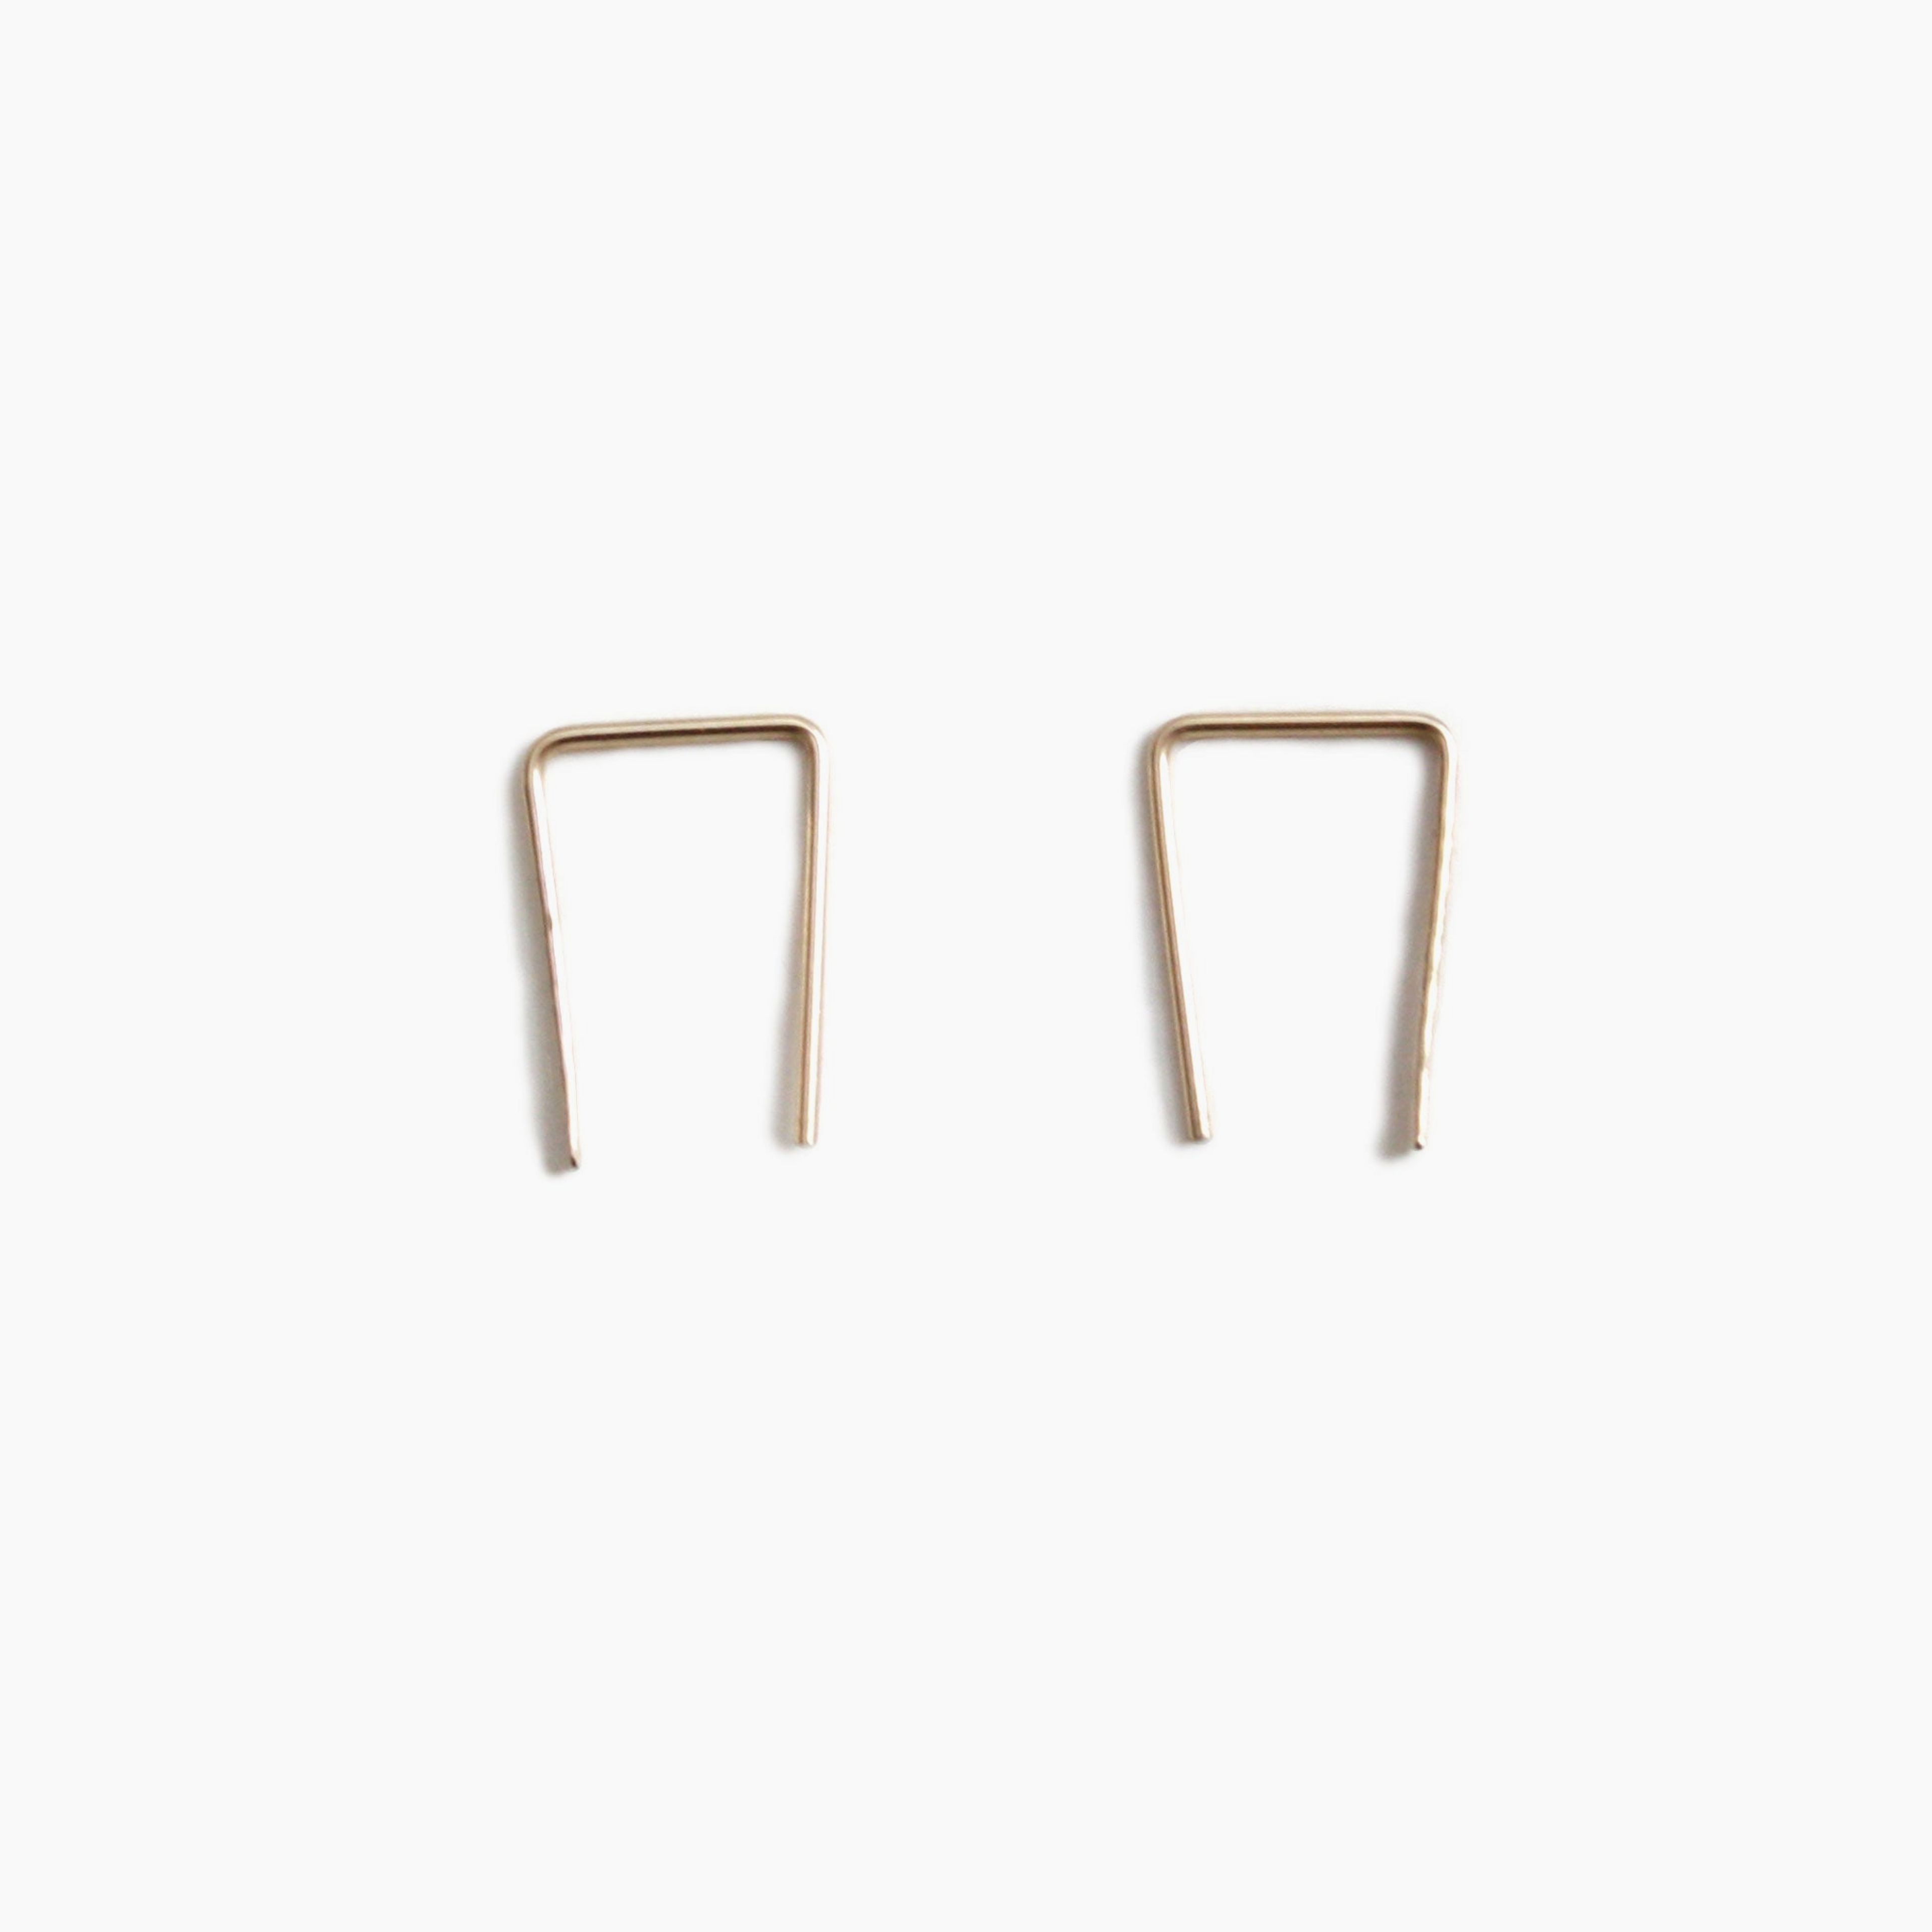 14K Gold Staple Earrings - Medium